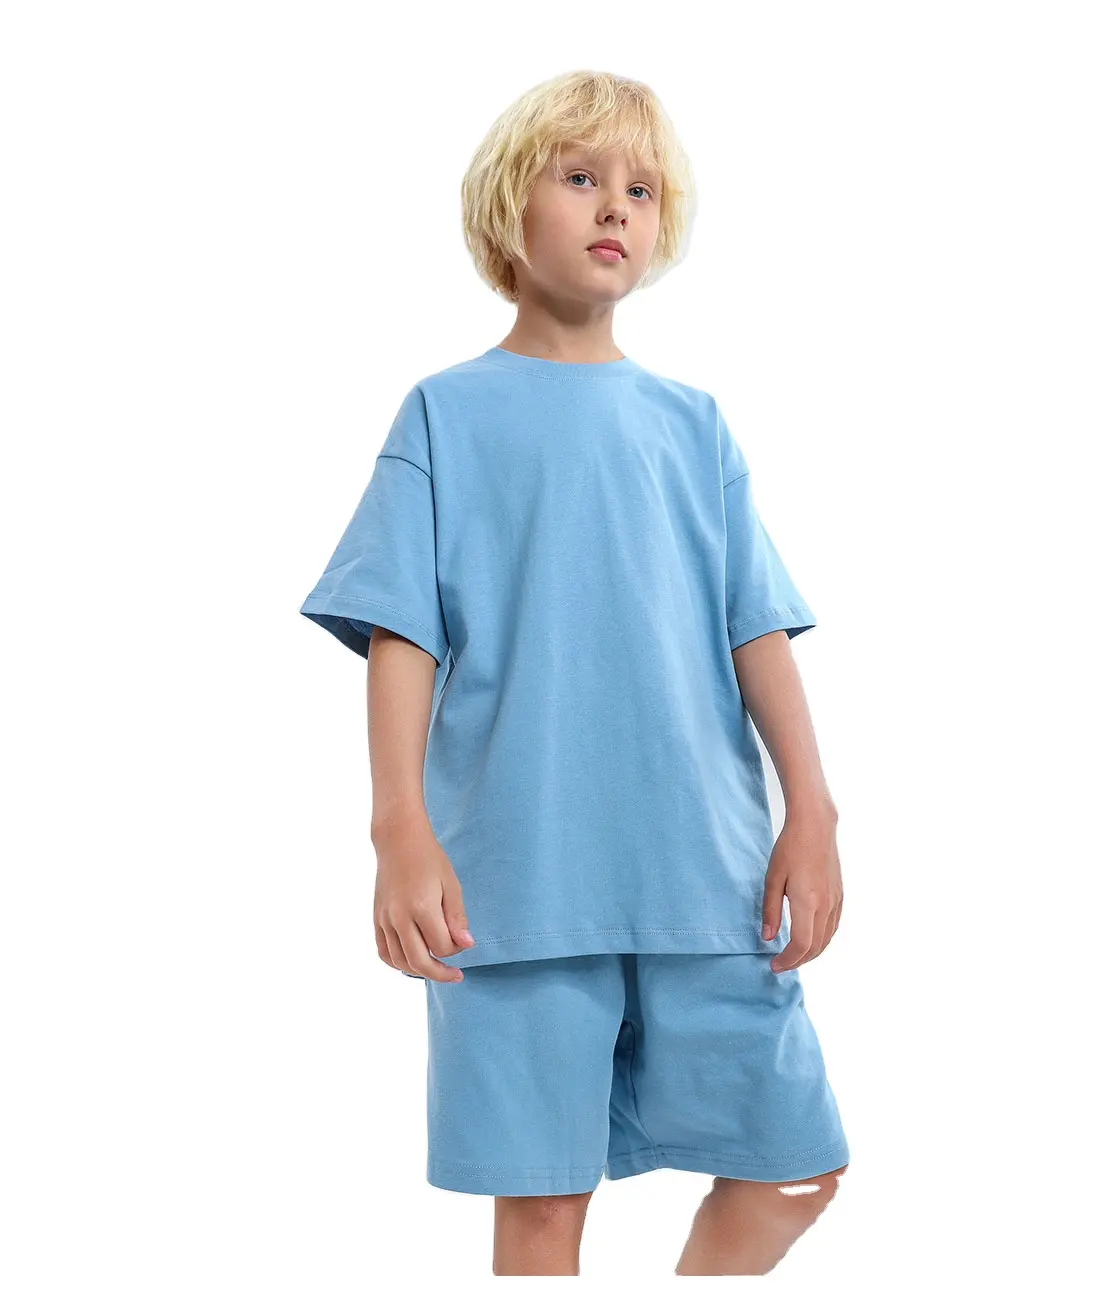 Camiseta de algodão para crianças, camiseta personalizada simples para meninos e meninas; roupas de algodão multicoloridas para crianças; camisetas de tamanho grande